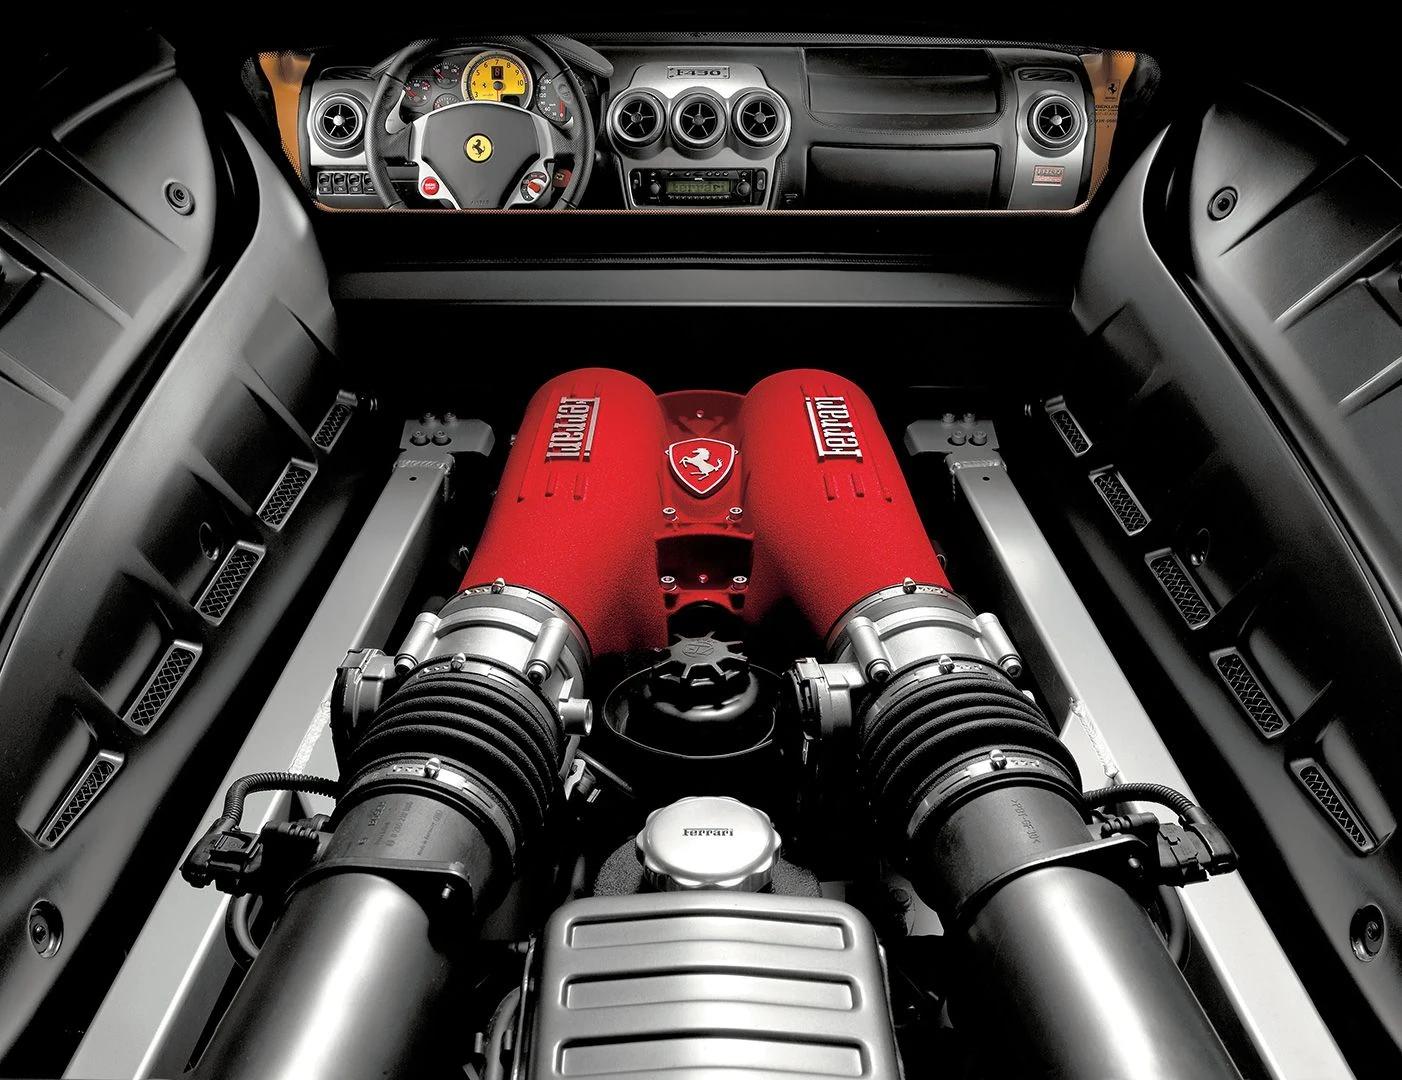 ferrari f430 scuderia engine - How much HP does a 2008 Ferrari 430 Scuderia have